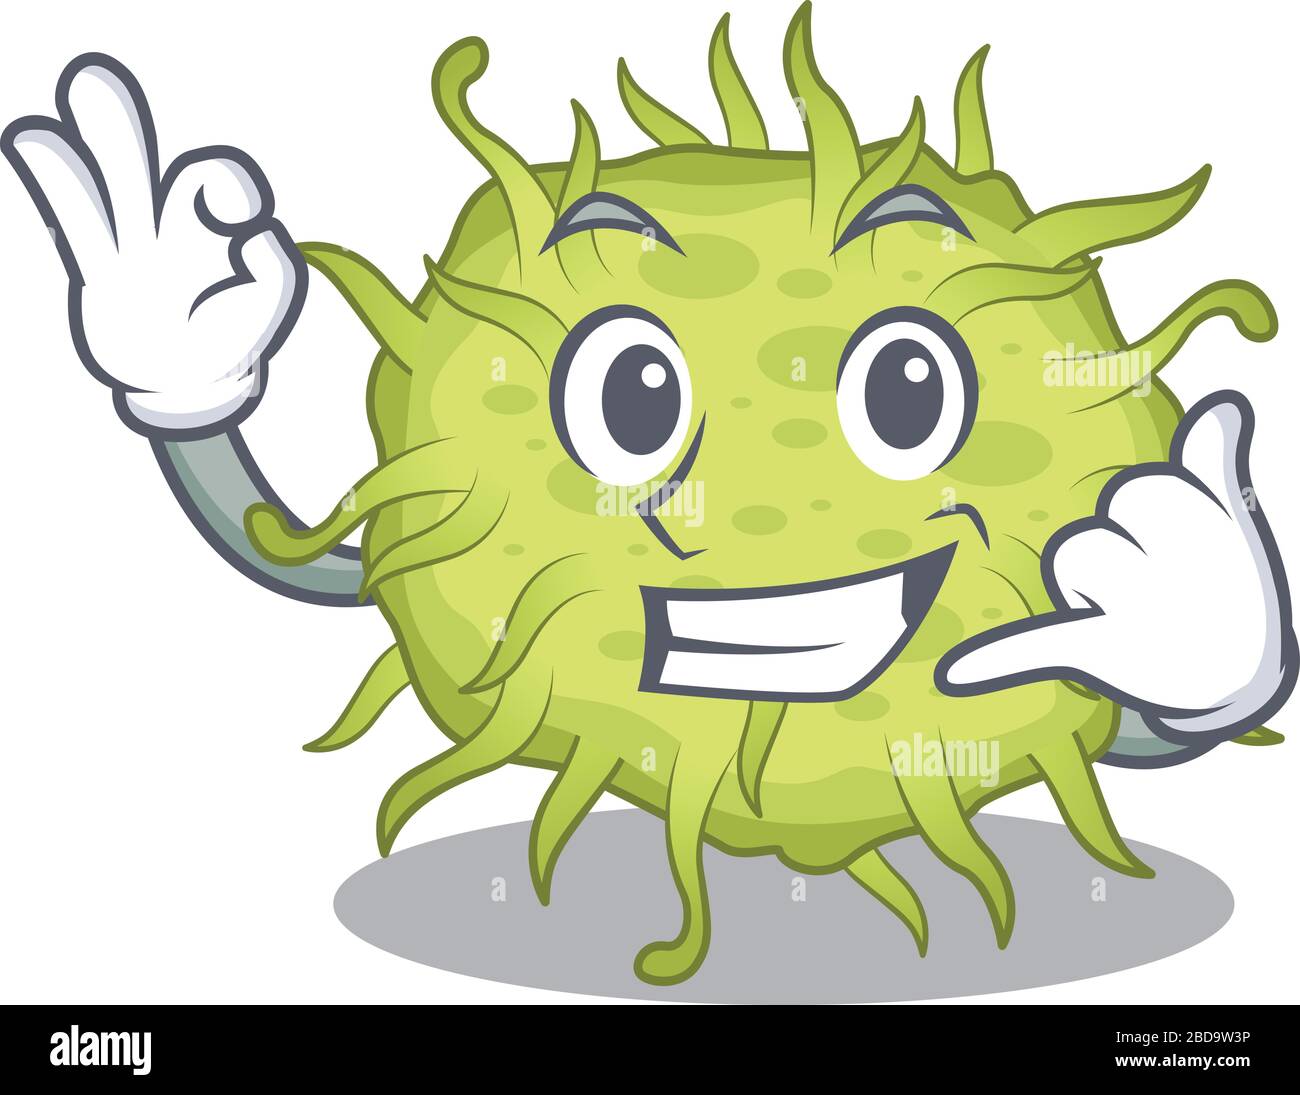 Dessin de dessin animé de bactéries coccus avec m'appeler le geste drôle Illustration de Vecteur